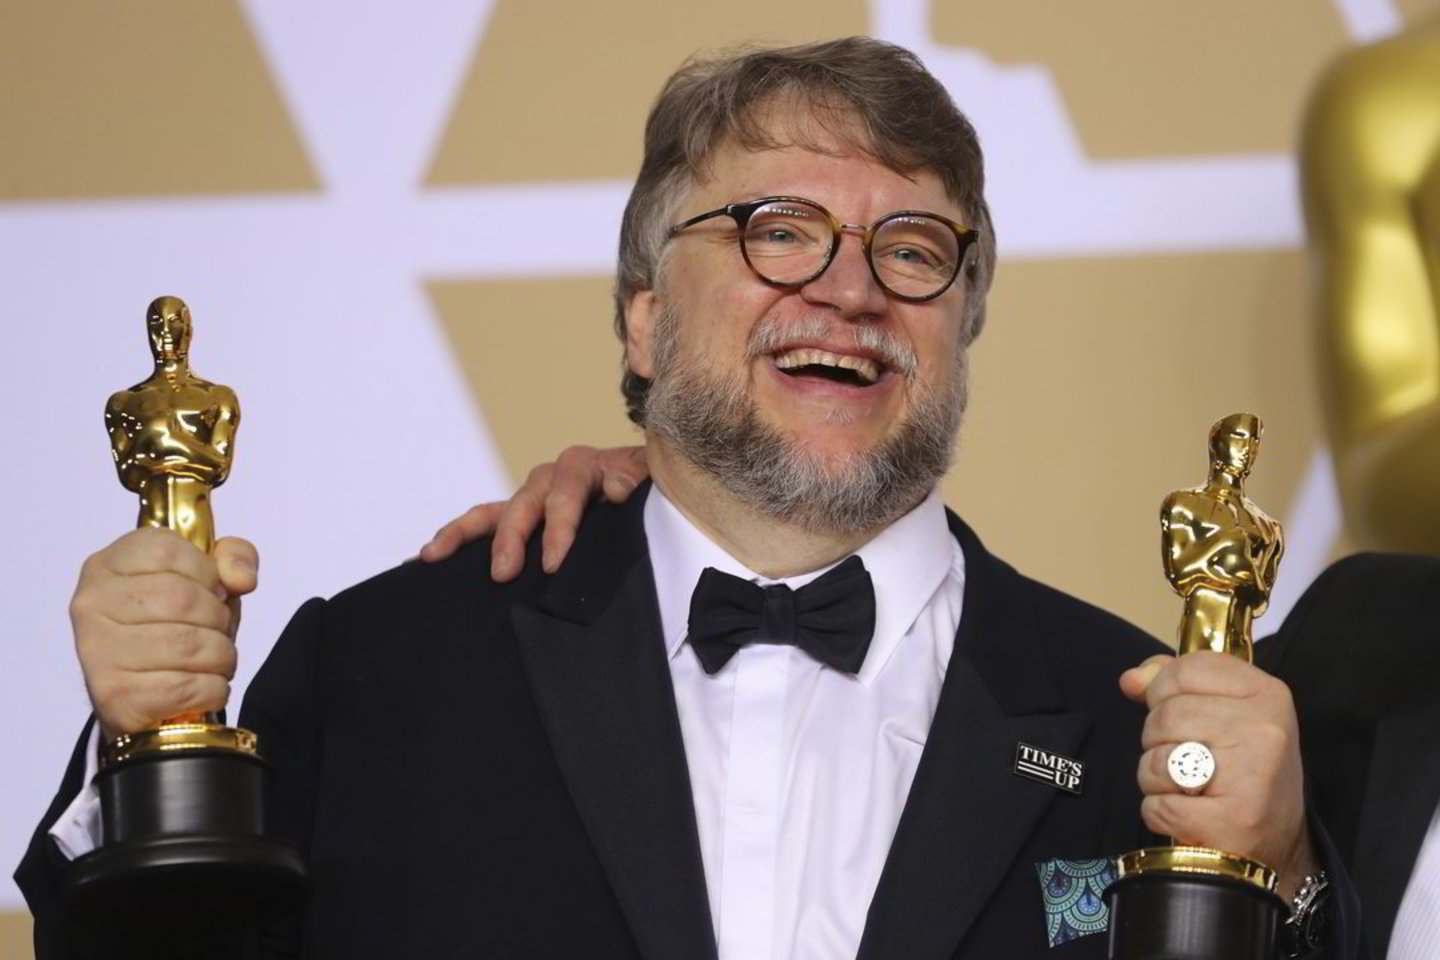 Guillermo del Toro - geriausias režisierius.Skaitykite  daugiau:  https://kultura.lrytas.lt/kinas/2018/03/04/news/-oskaras-2018-amfibija-susigrums-su-rasistais-4975780/?foto=4983982?utm_source=lrExtraLinks&amp;utm_campaign=Copy&amp;utm_medium=Copy<br> Reuters/Skanpix nuotr.